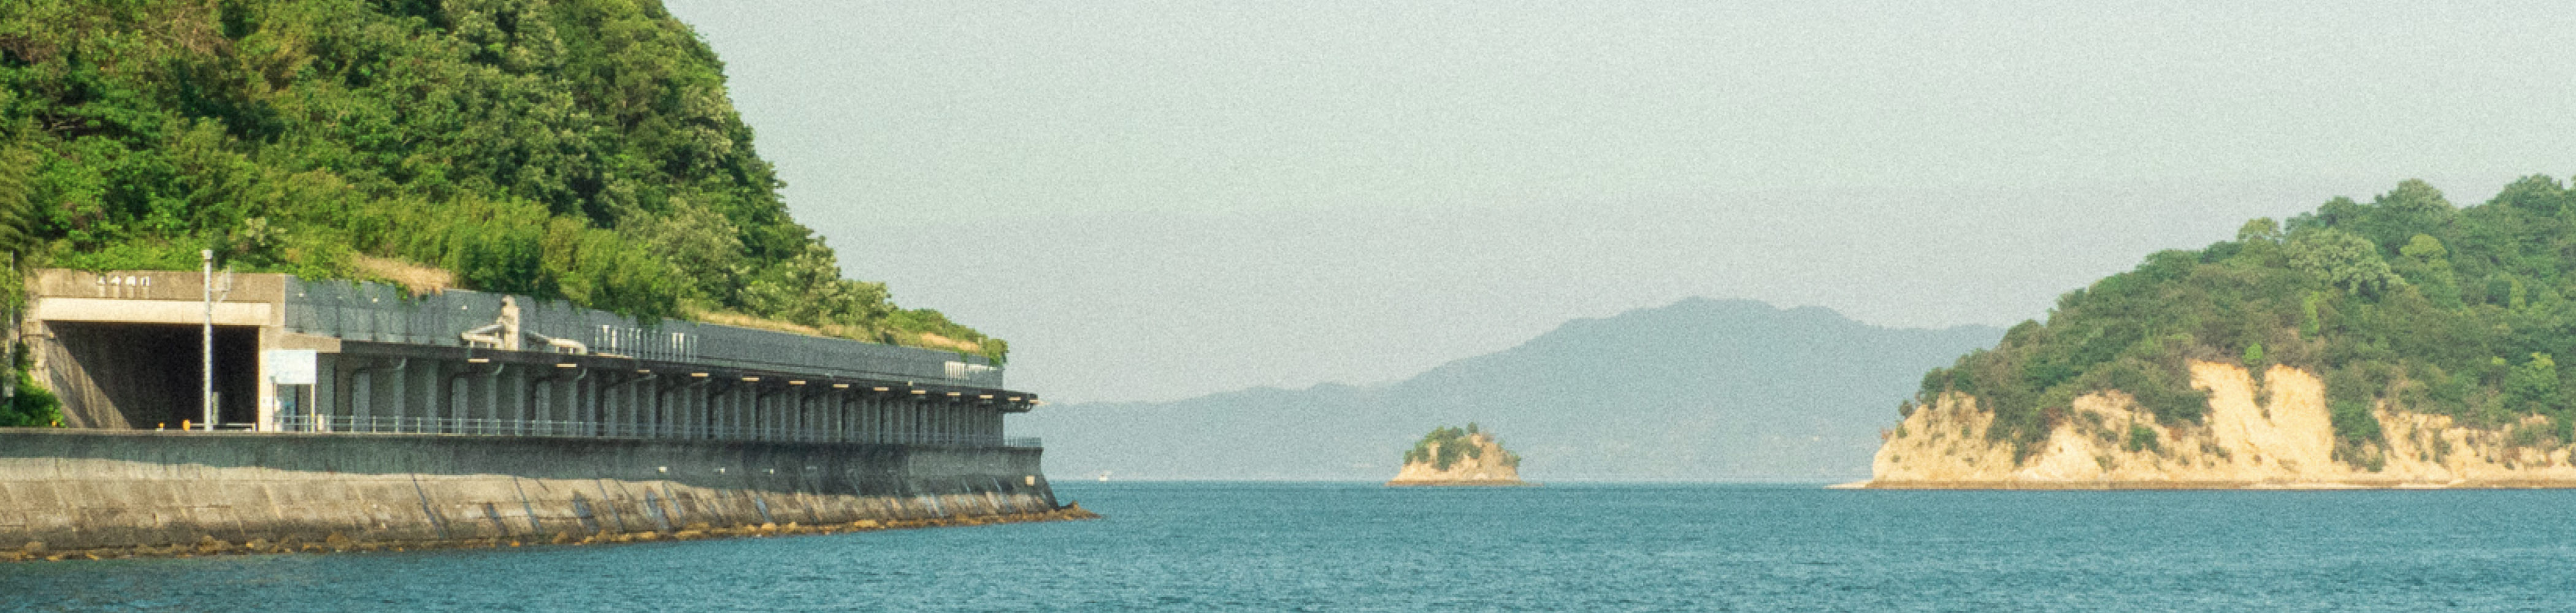 写真：瀬戸内海の風景。穏やかな海をメインに、島がいくつか映り込んでいる。